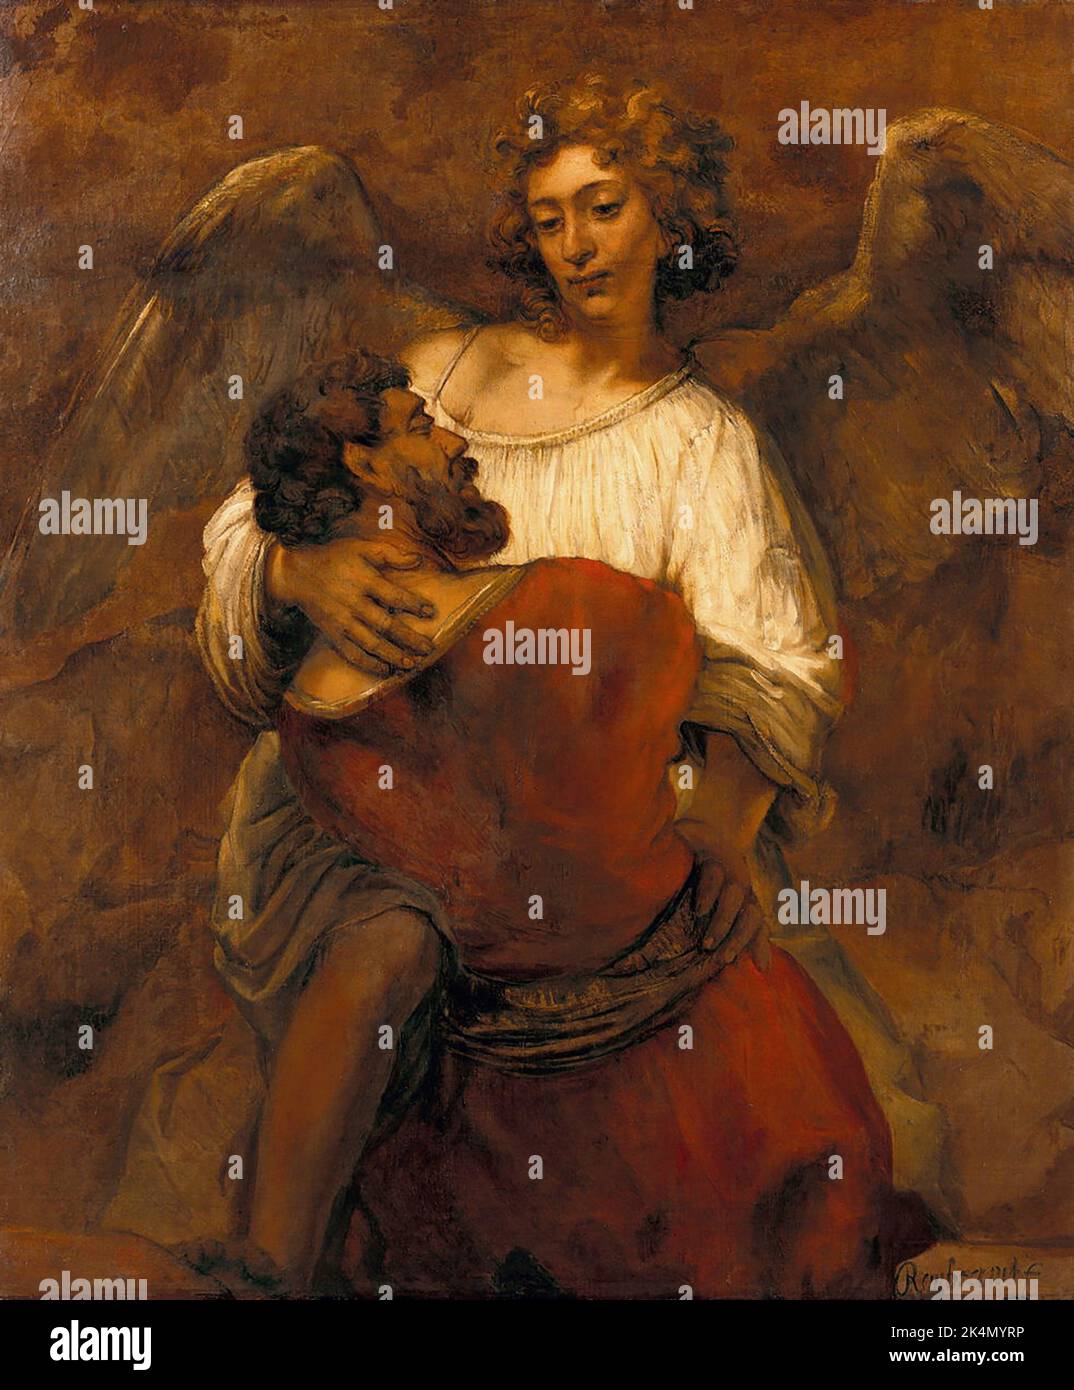 Jakob lutte avec l'ange (Genèse 32:23-32), c. 1659. Rembrandt Harmenszoon van Rijn. Leiden, 15 de julio de 1606 - Ámsterdam, 4 de octubre de Banque D'Images